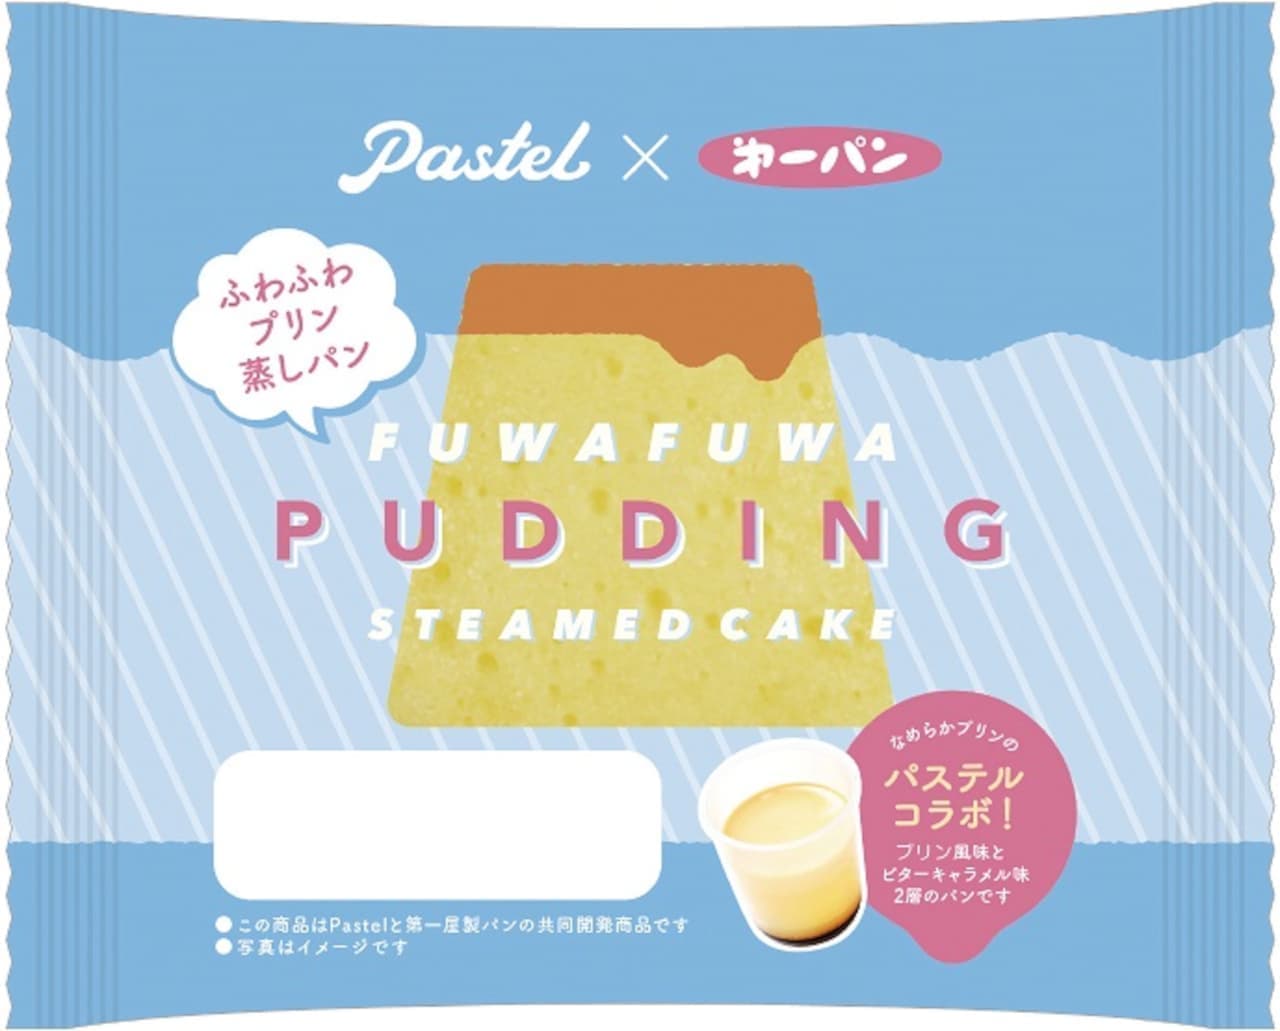 Daiichi Pan "Smooth Pudding Cream Bun" and "Fluffy Pudding Steamed Bun